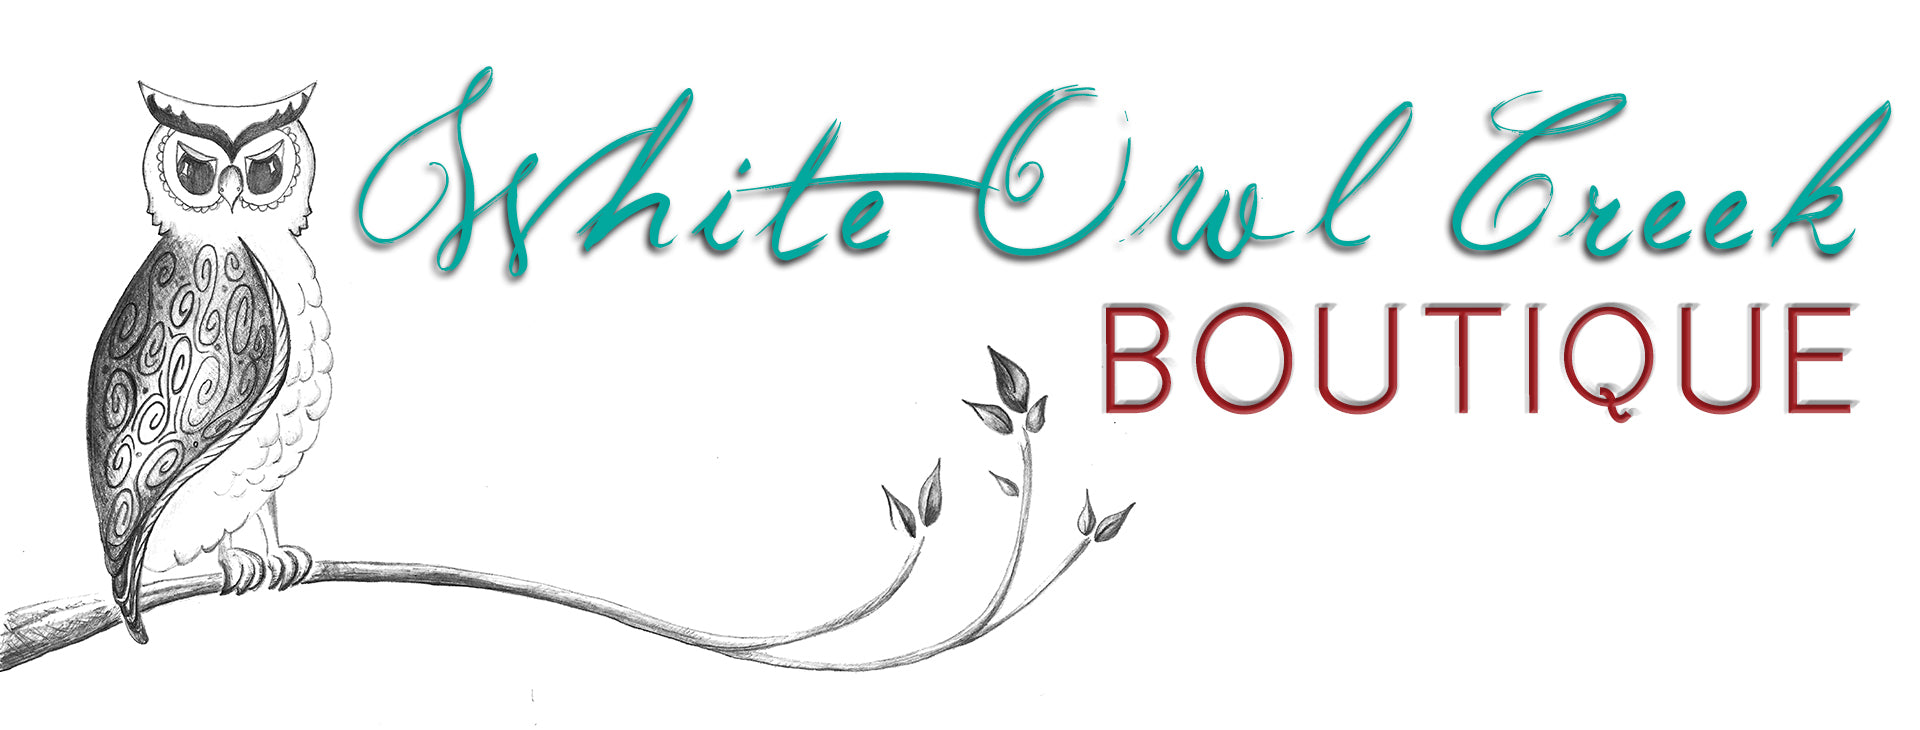 White Owl Creek Gift Card - White Owl Creek Boutique